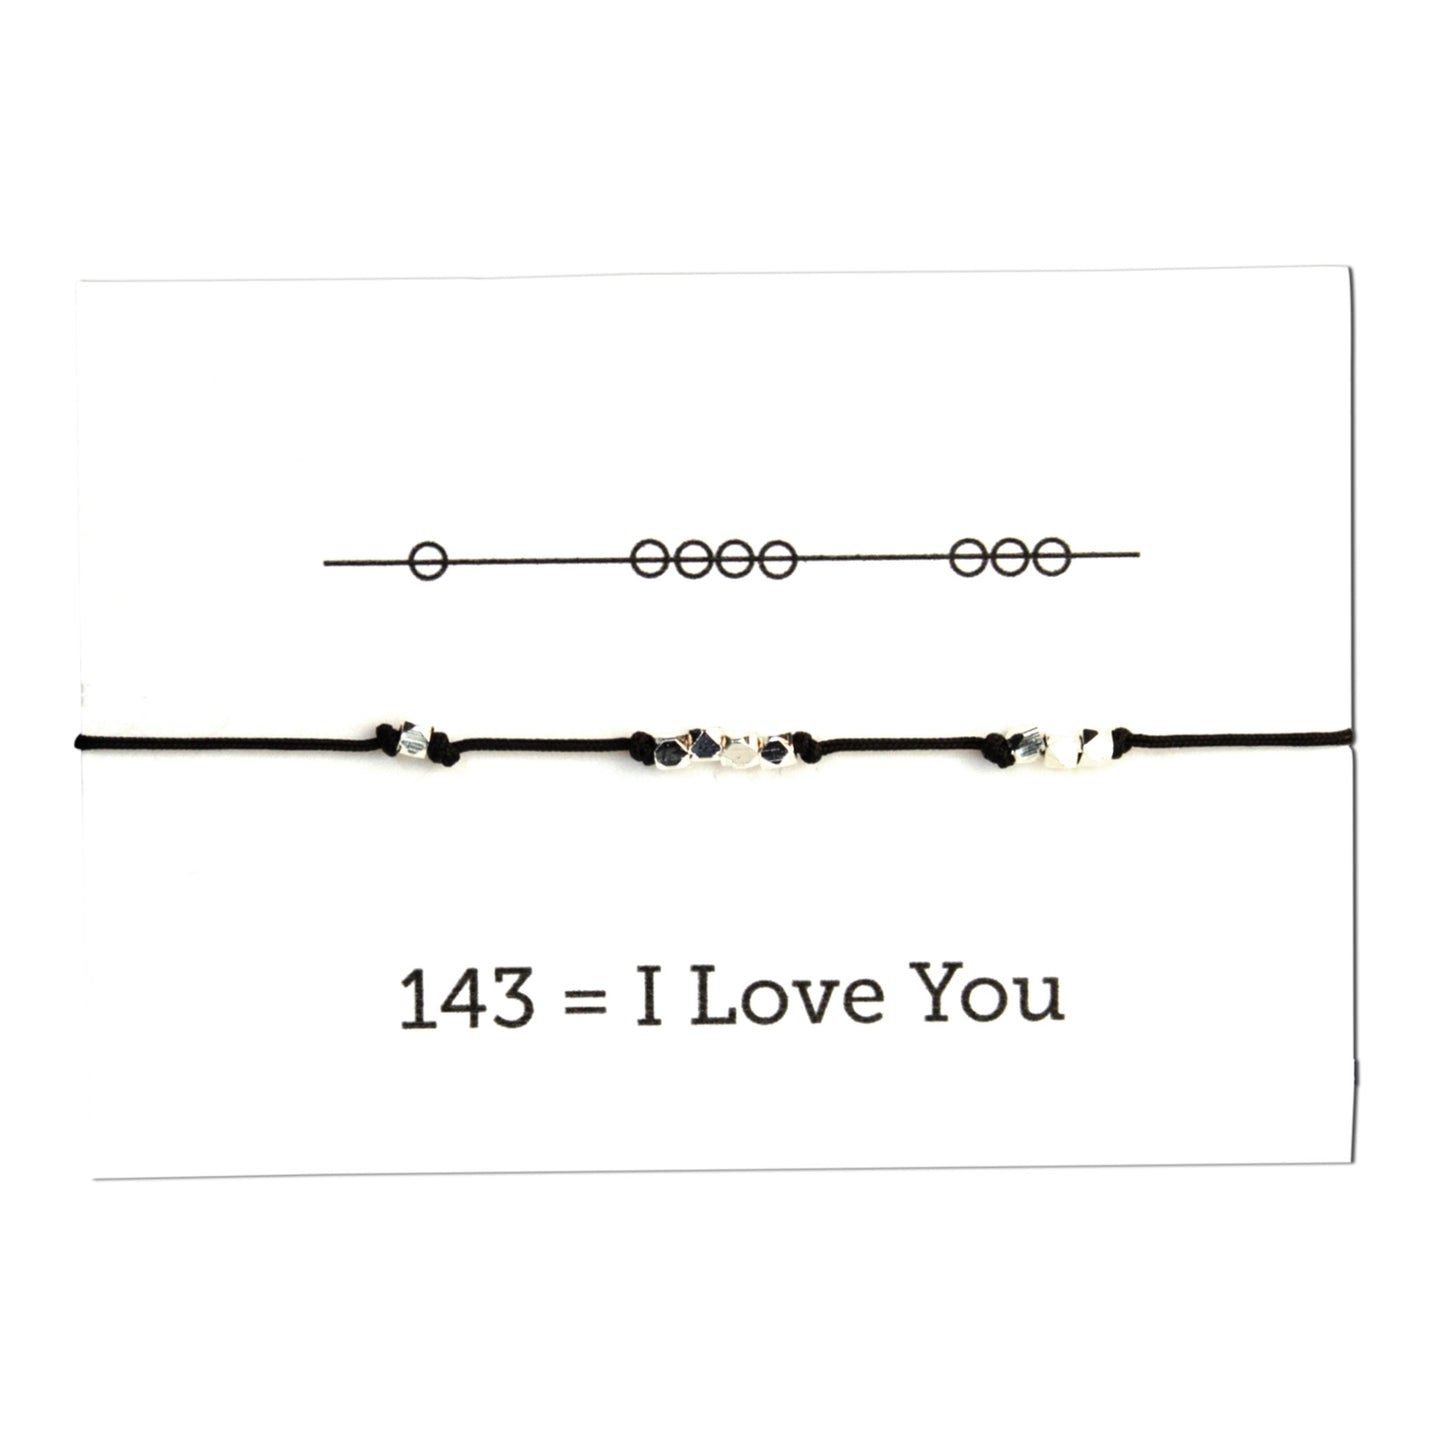 I Love You 143 Cord Bracelet - Black - Sunday Girl by Amy DiLamarra